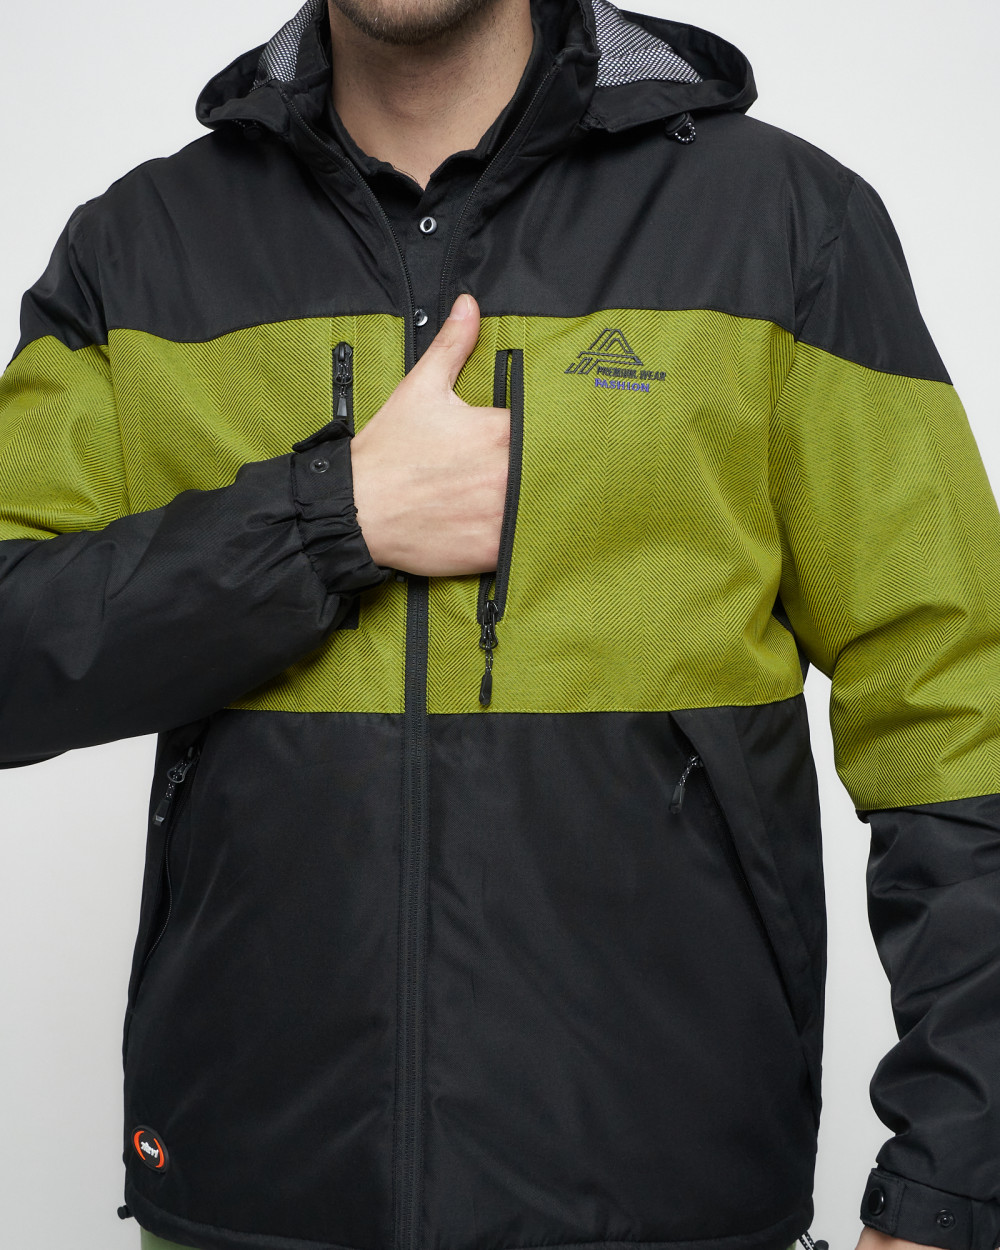 Купить куртку мужскую спортивную весеннюю оптом от производителя недорого в Москве 8808Ch 1